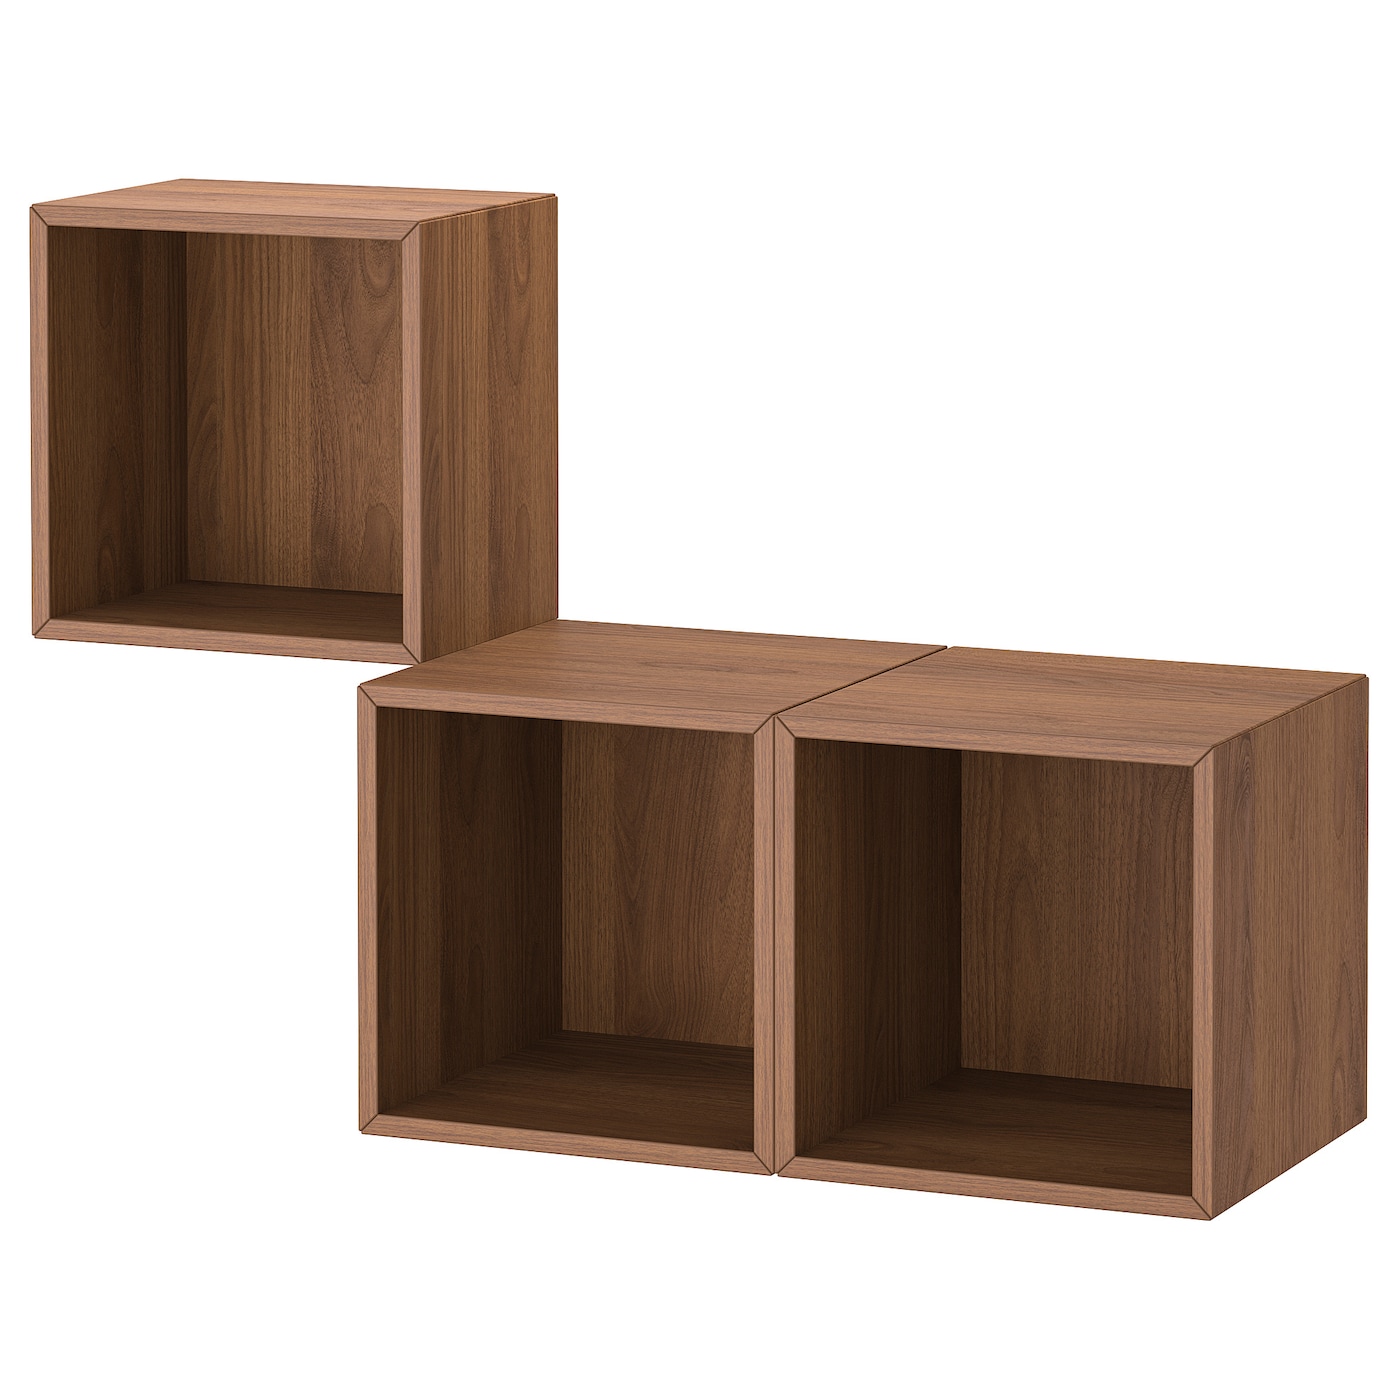 Навесная комбинация шкафов - IKEA EKET, 105x35x70 см, с эффектом ореха,  ЭКЕТ ИКЕА